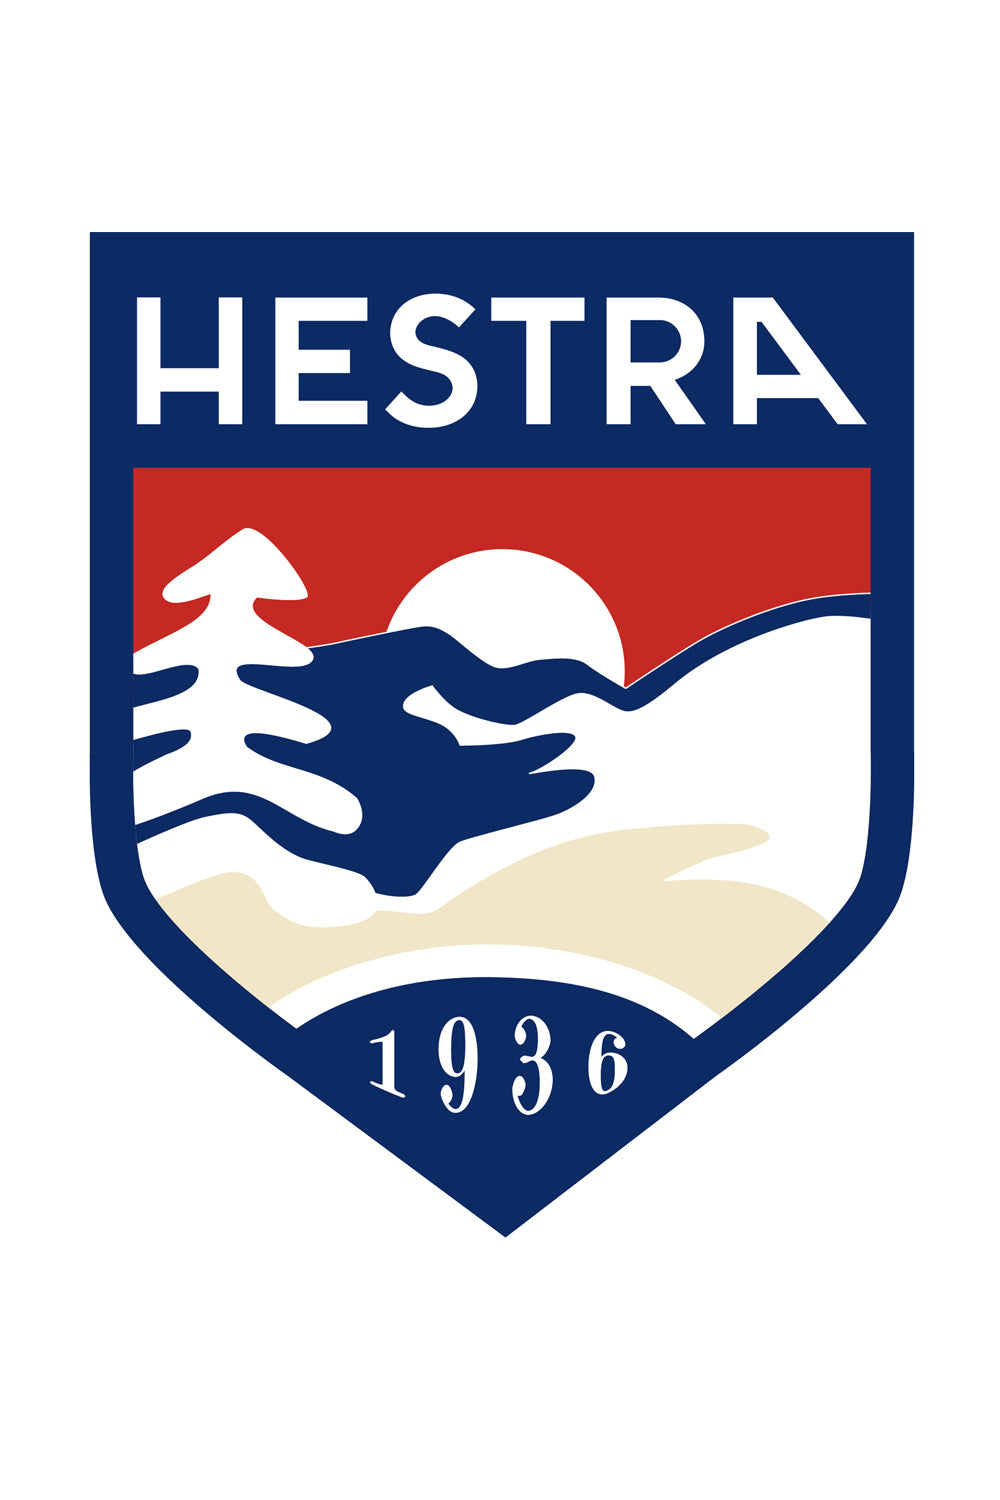 Hestra